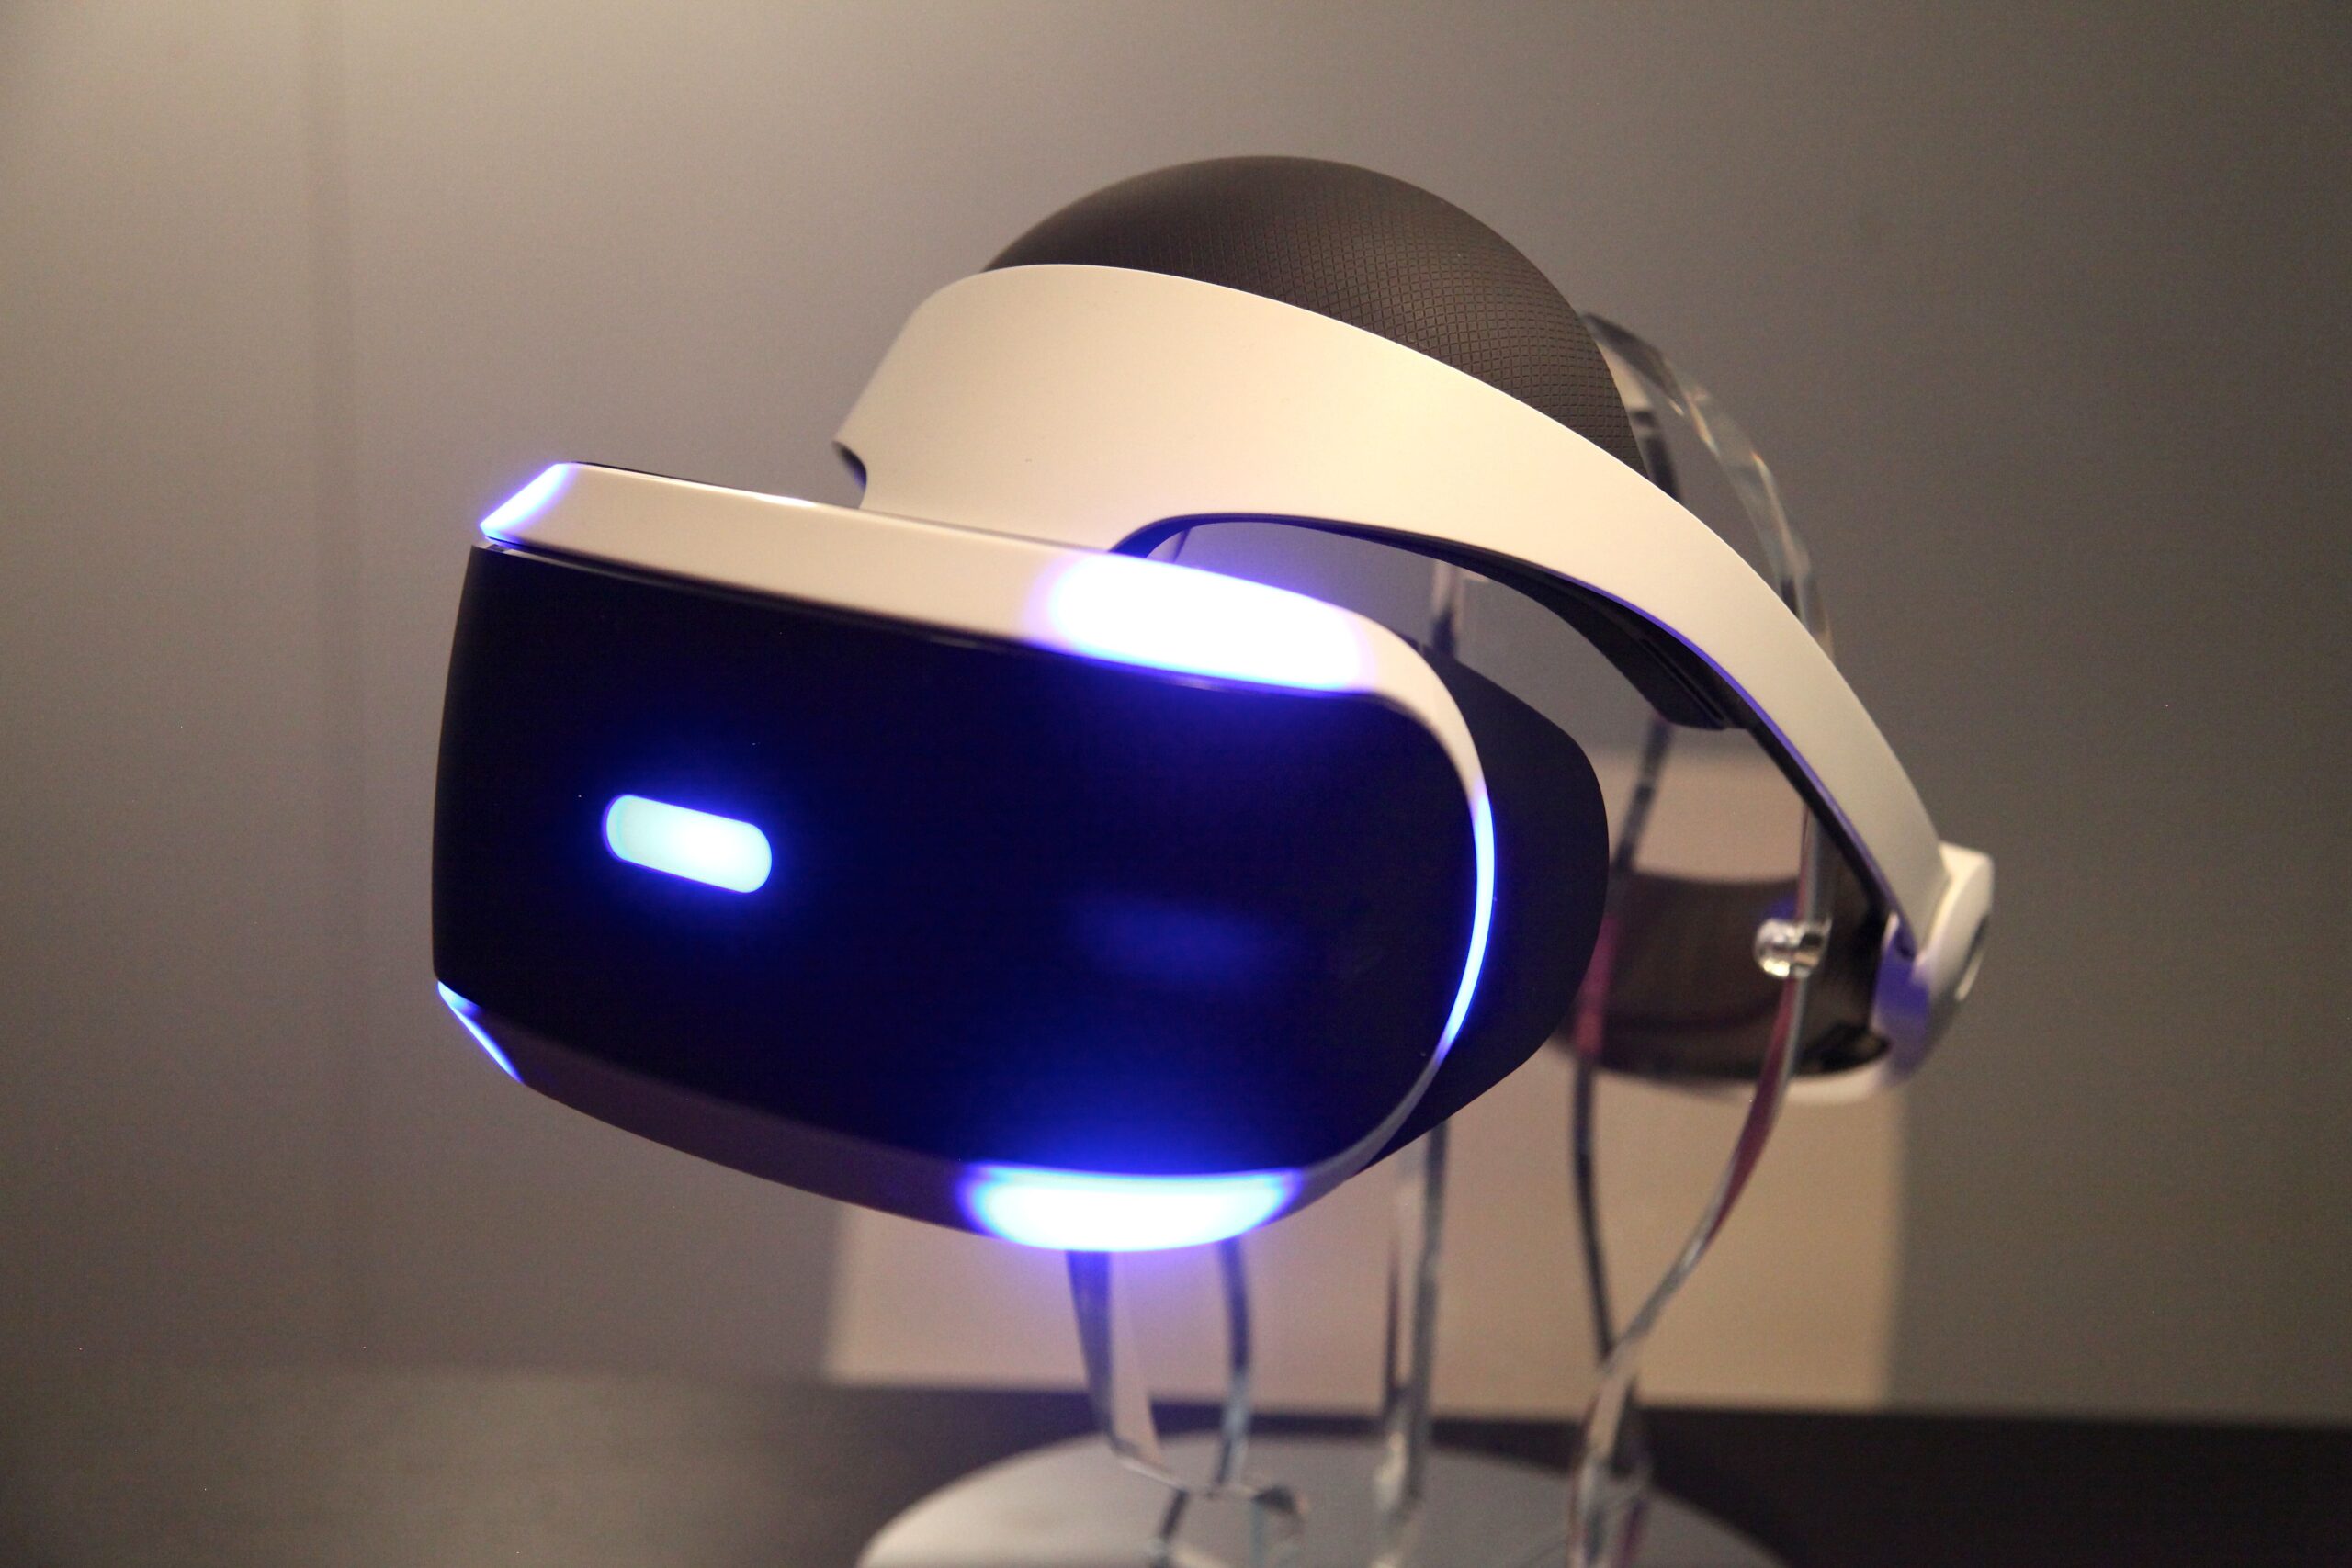 Sony Morpheus VR Headset